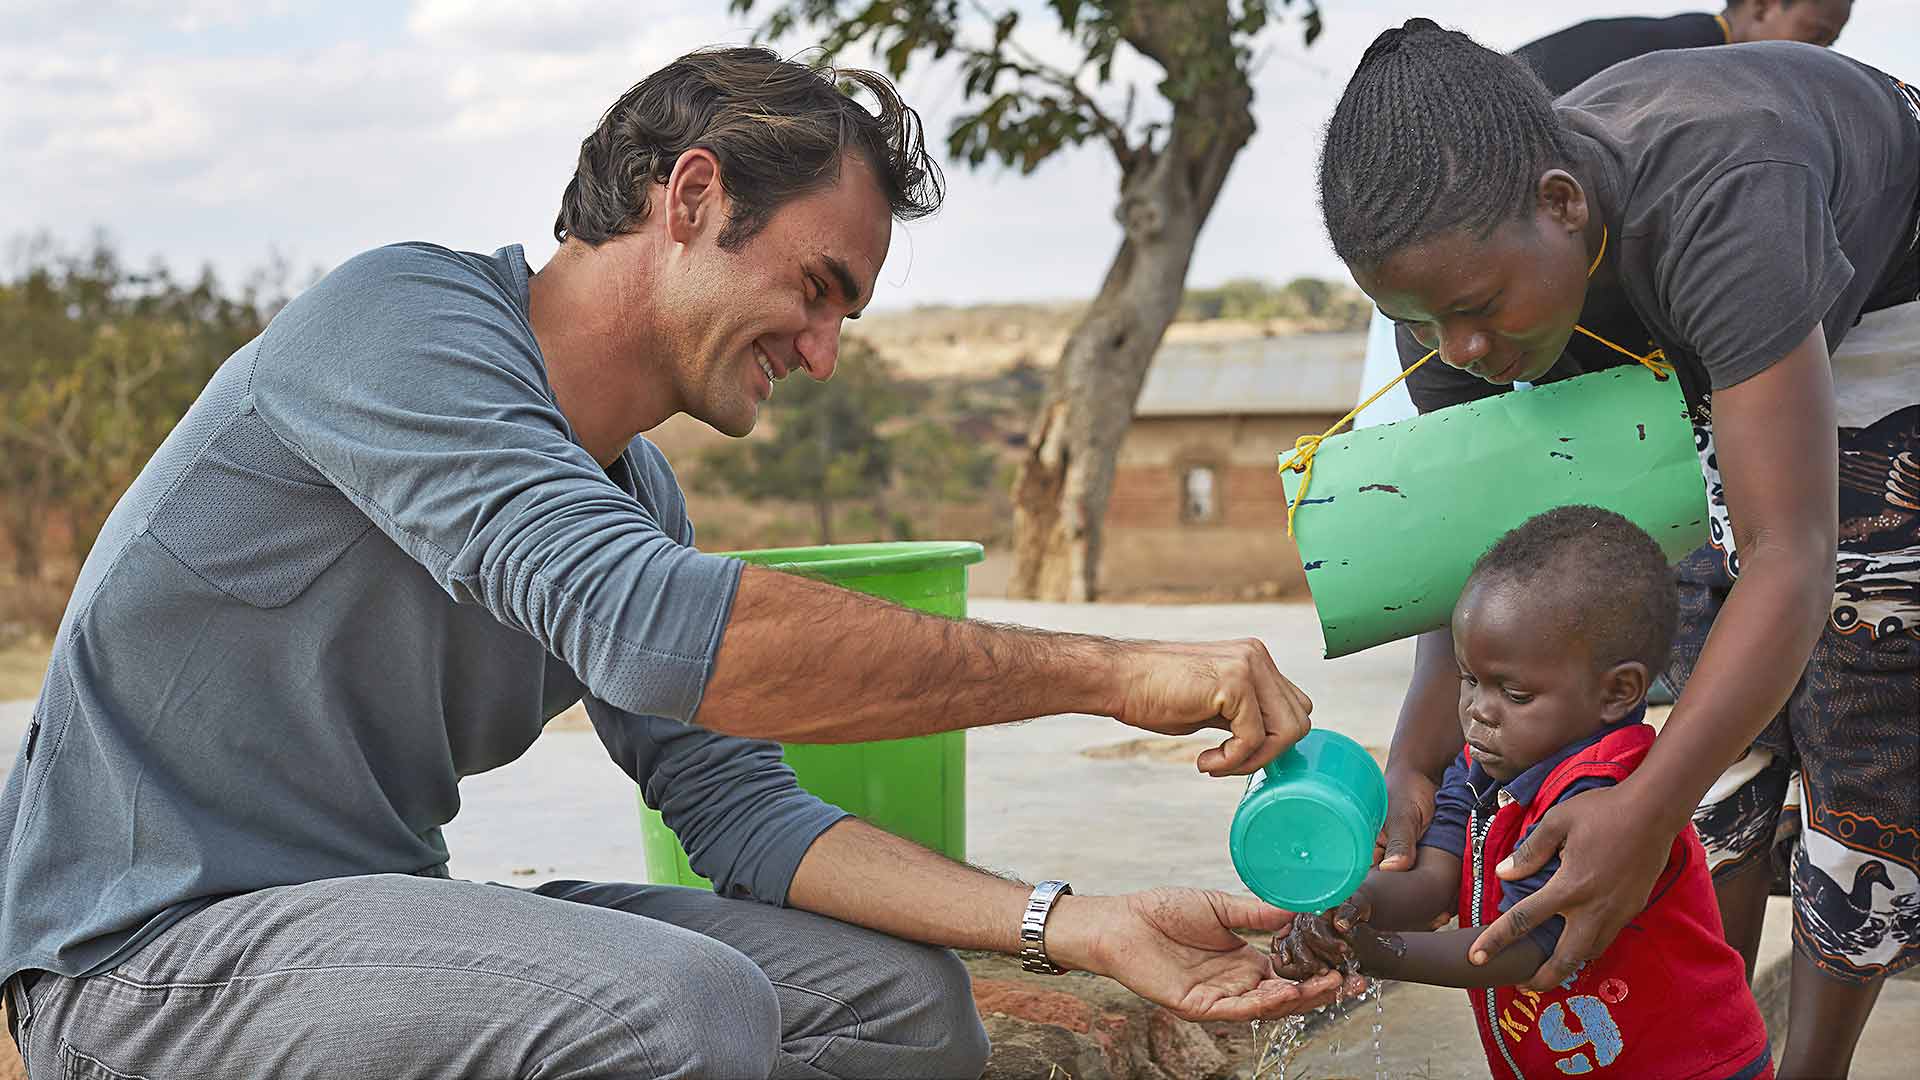 Fundación de Roger Federer apoyará a los niños de África con alimentos